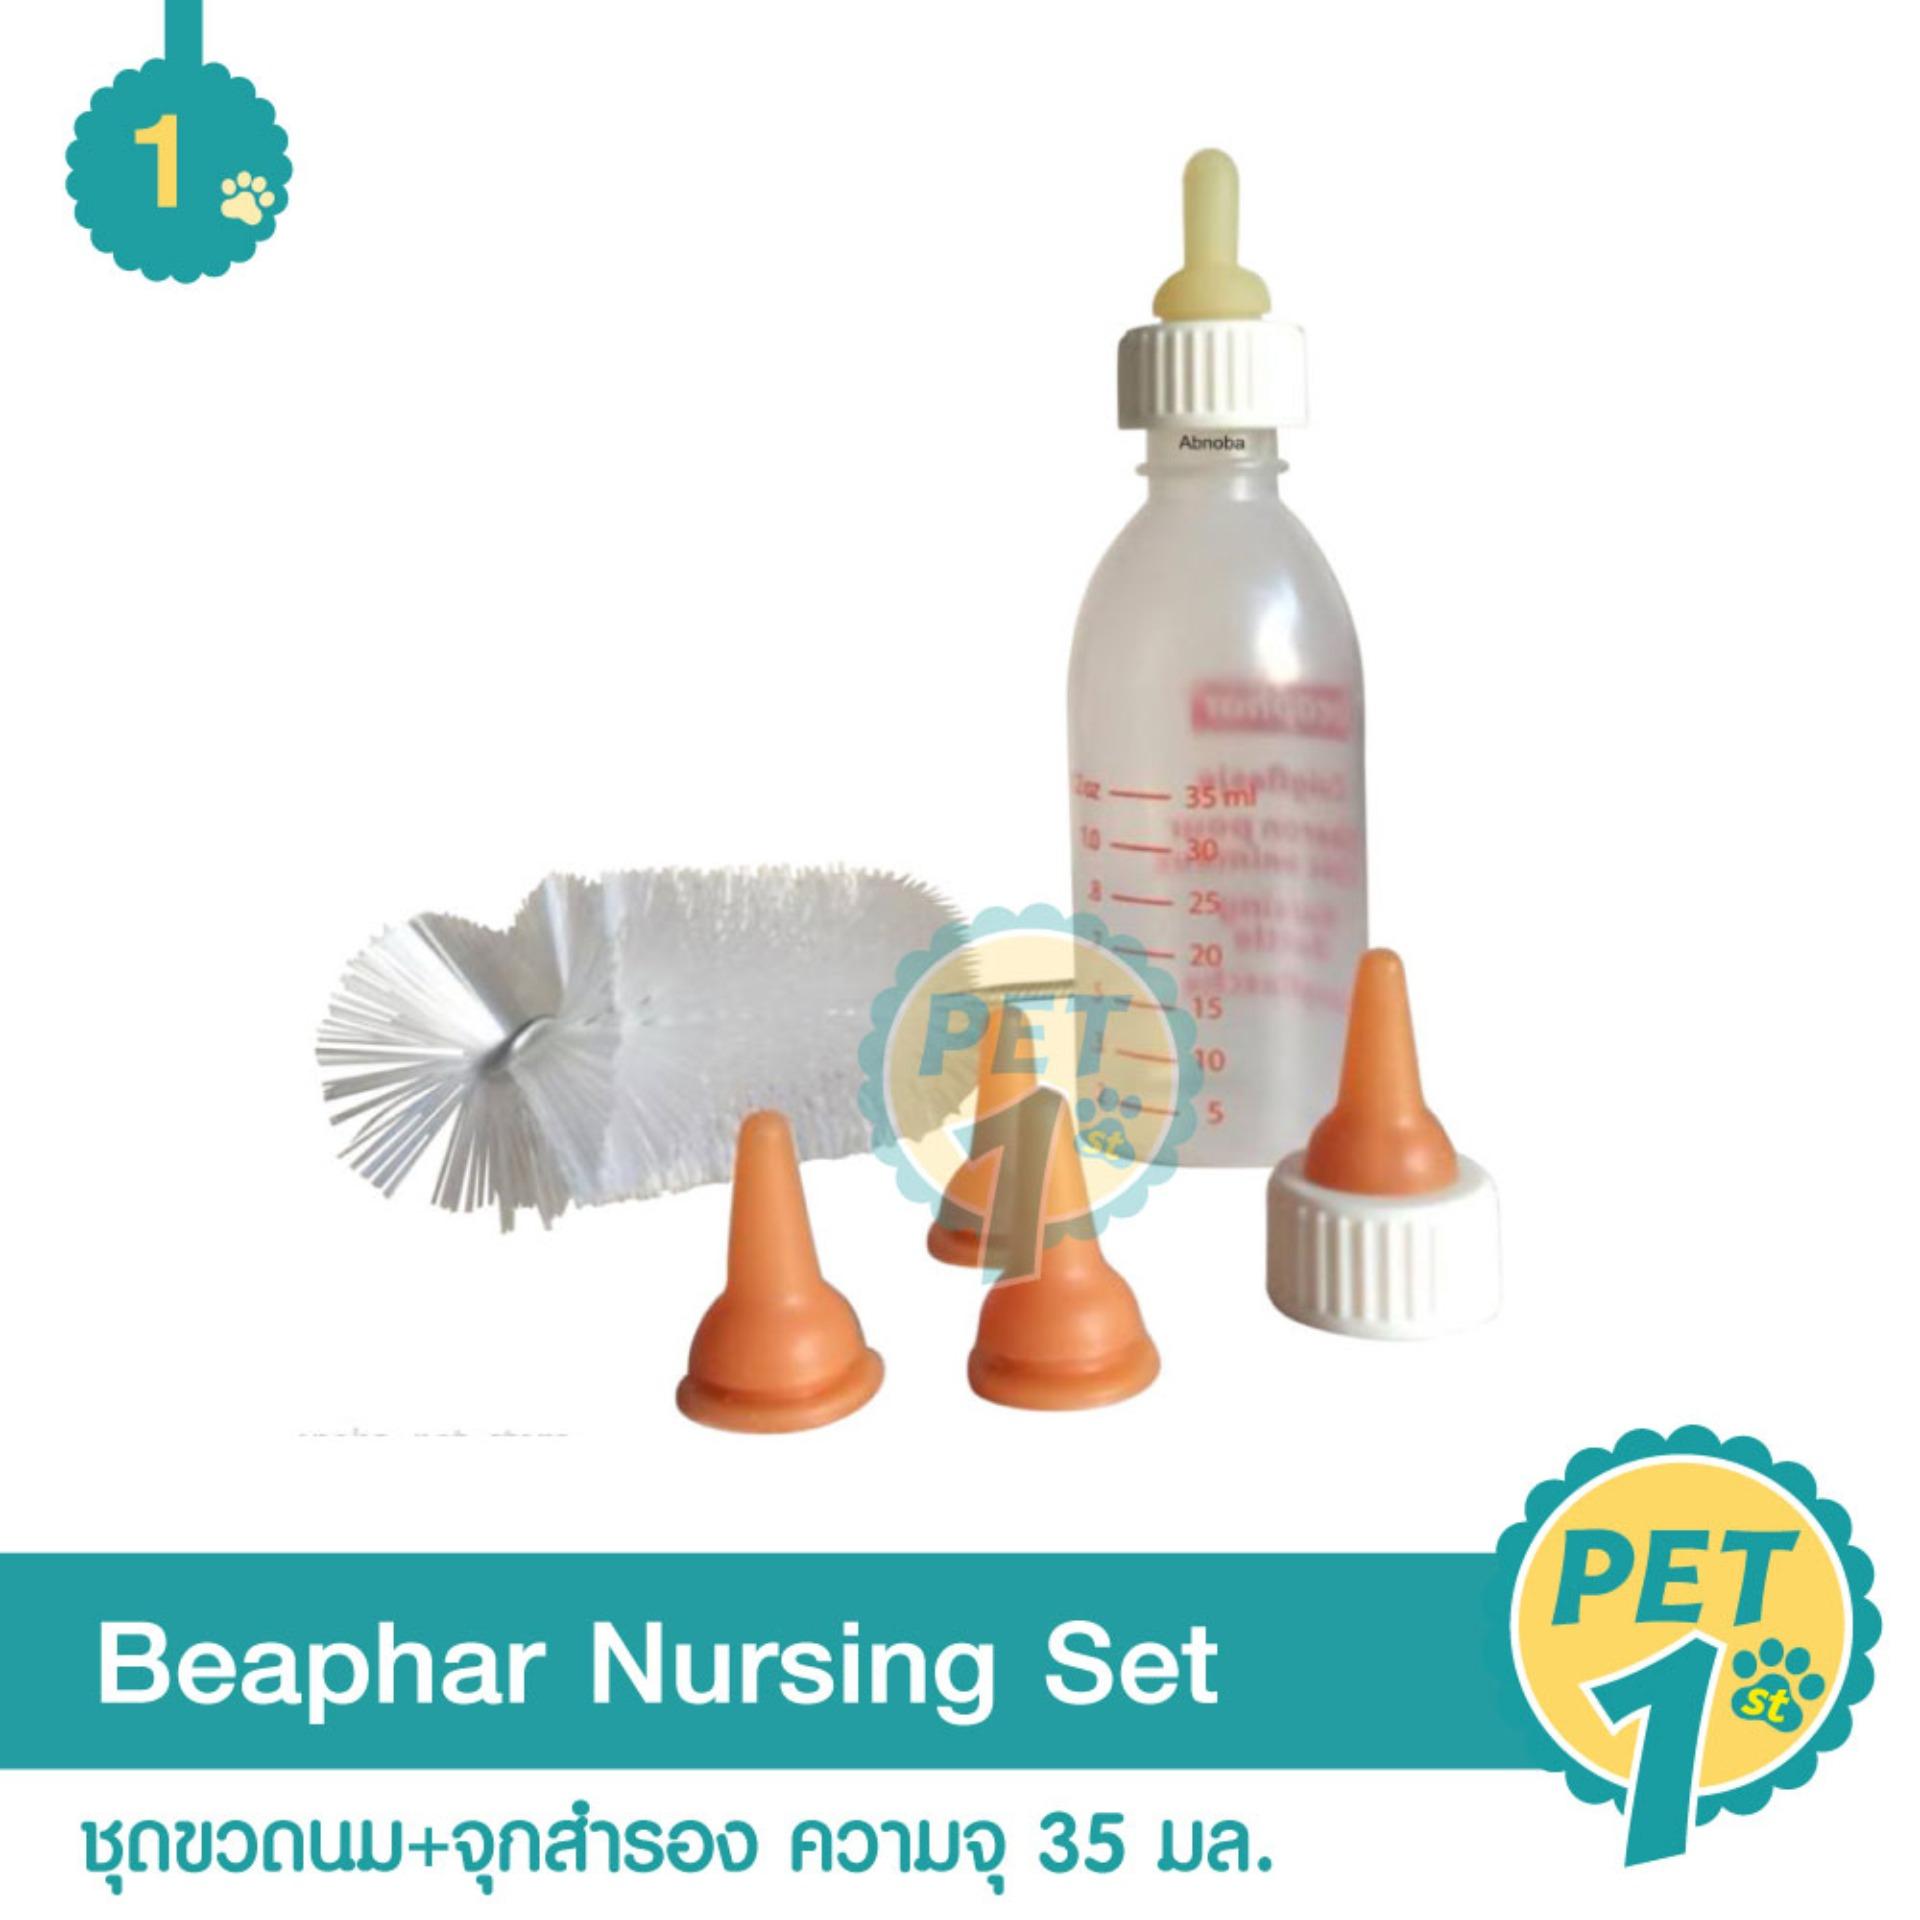 Beaphar Nursing Set  ในชุดประกอบด้วยชุดขวดนม+จุกสำรอง 4 ชิ้น สำหรับสัตว์เลี้ยง ความจุ 35 มล.